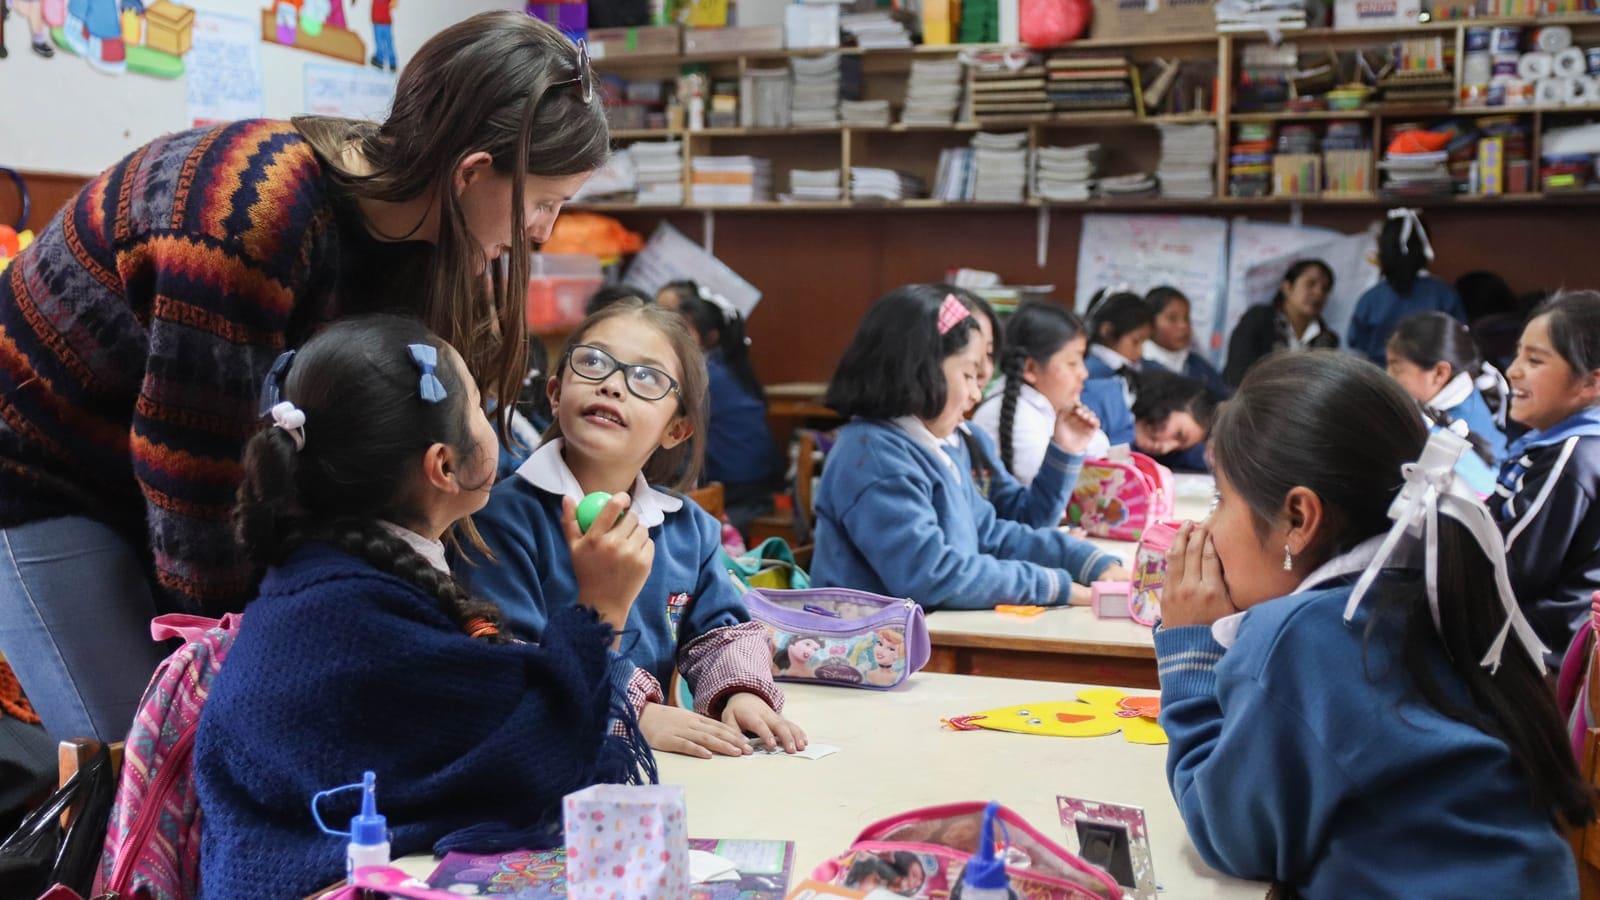 Teaching Children in Peru